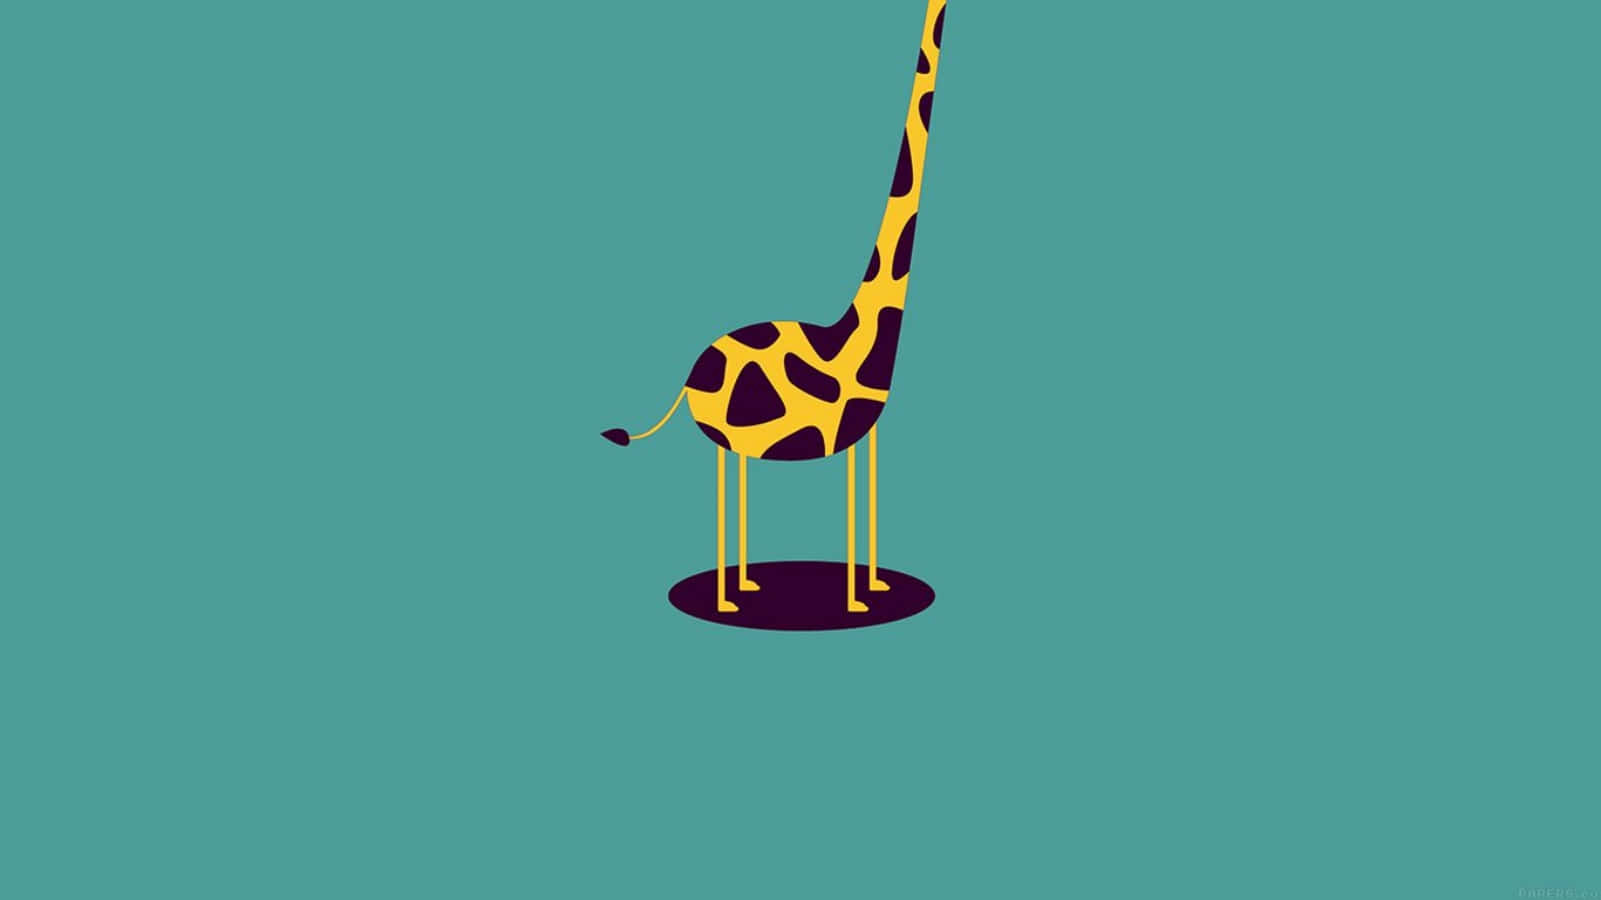 a giraffe standing on a blue background Wallpaper